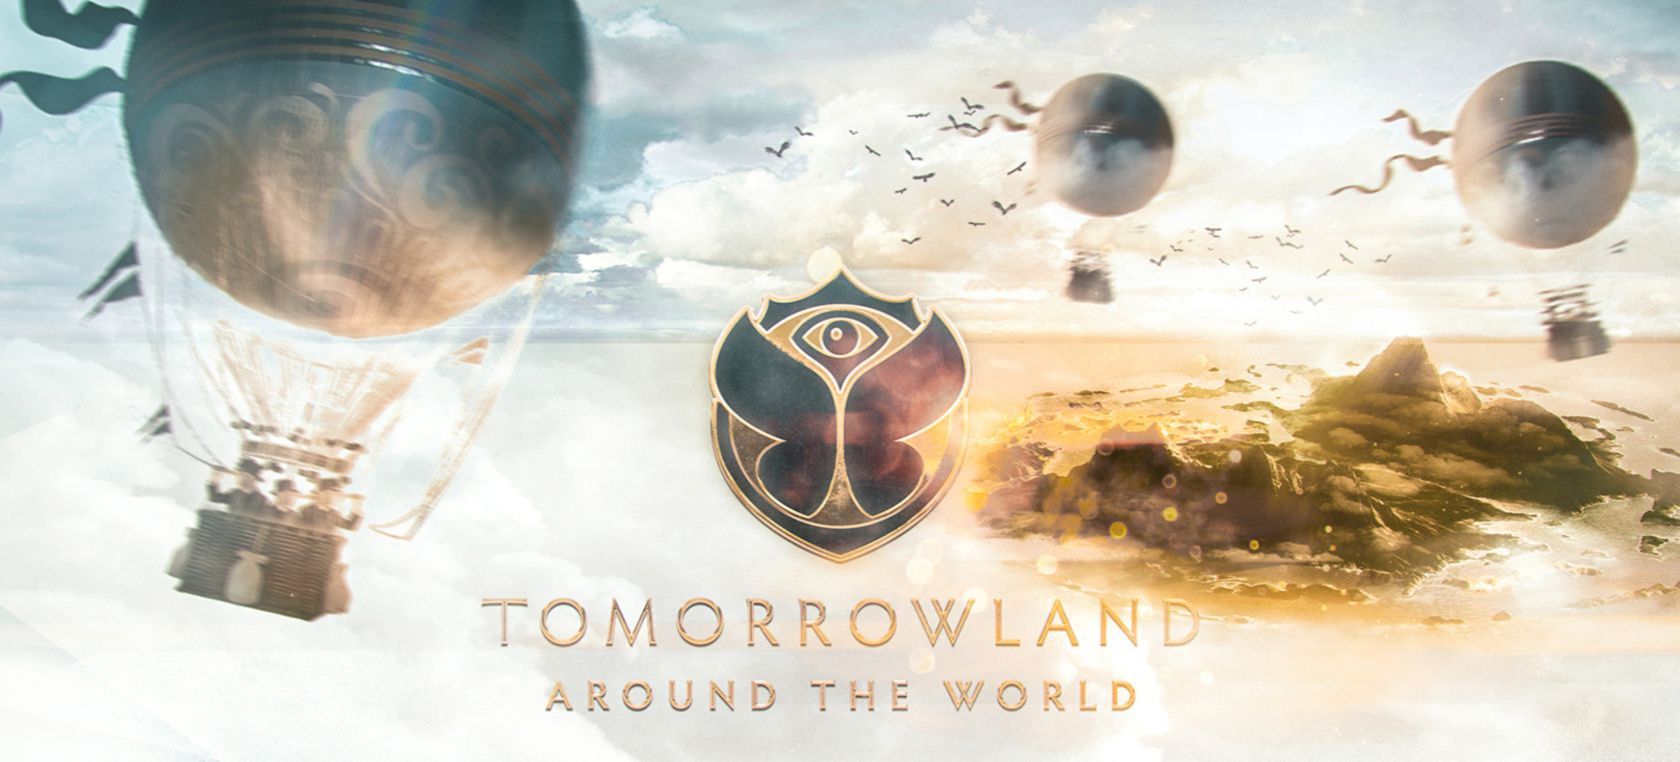 ¿Quieres vivir la experiencia de Tomorrowland Around The World? Ahora es posible con LOS40 Dance